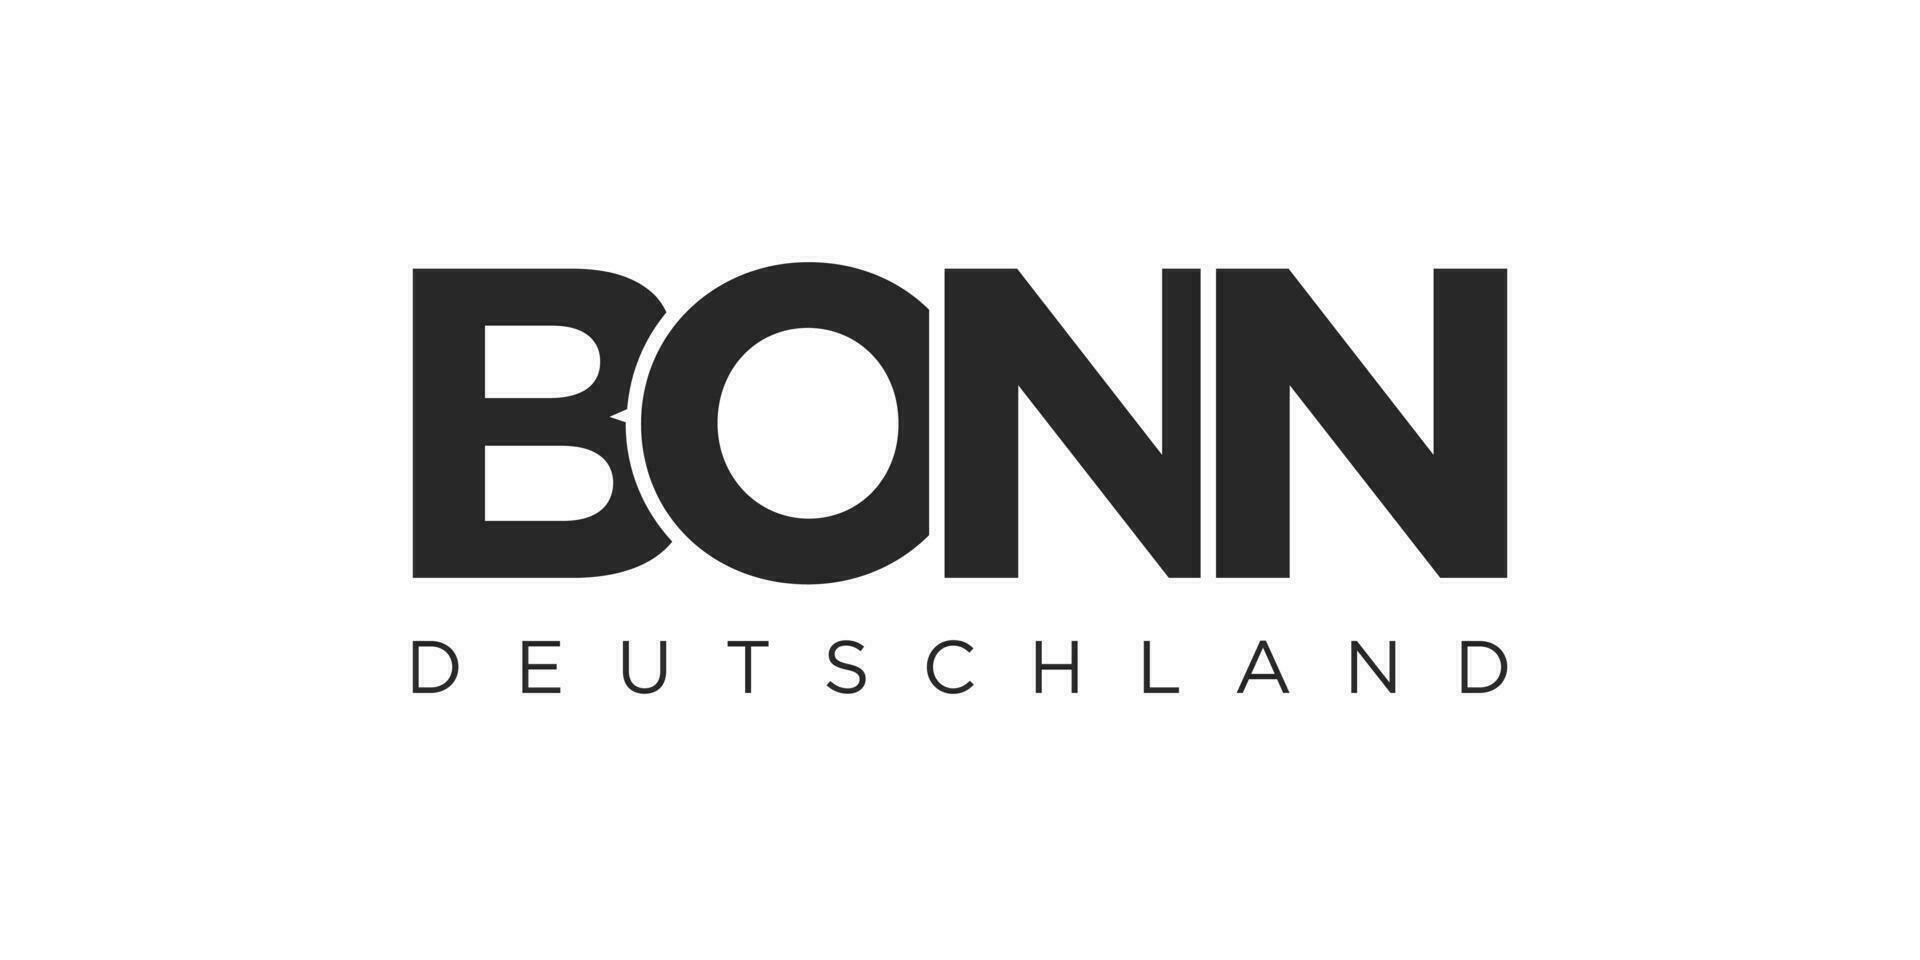 bonn tyskland, modern och kreativ vektor illustration design terar de stad av Tyskland som en grafisk symbol och text element, uppsättning mot en vit bakgrund, är perfekt för resa banderoller